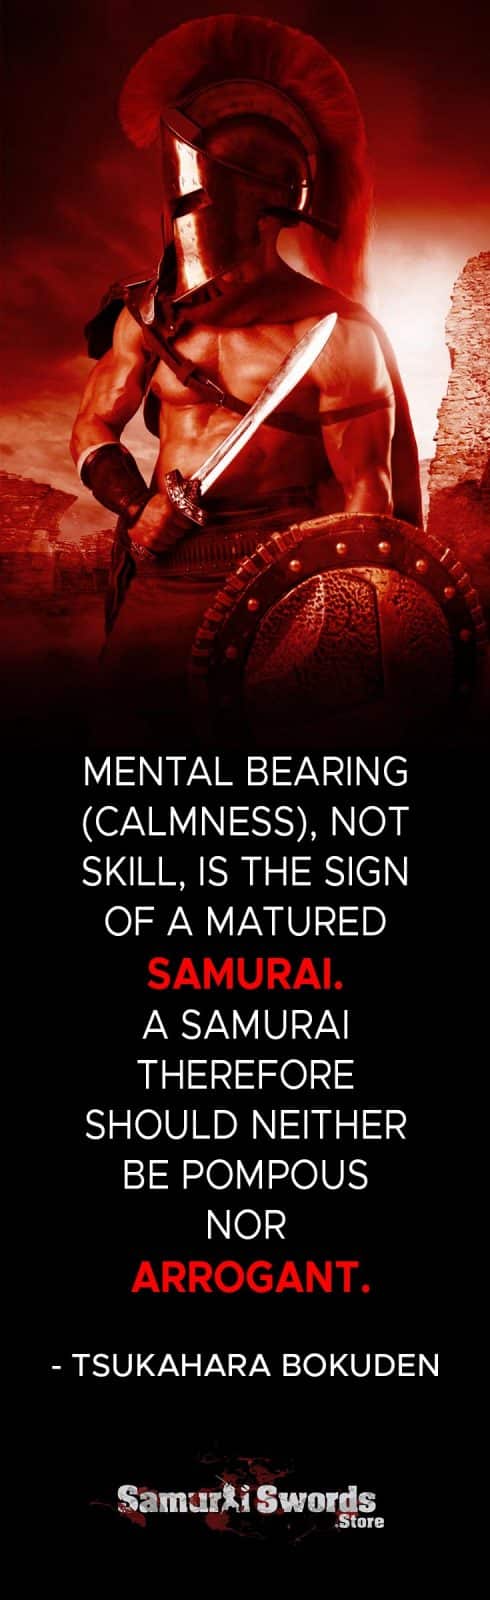 Mental bearing (calmness)